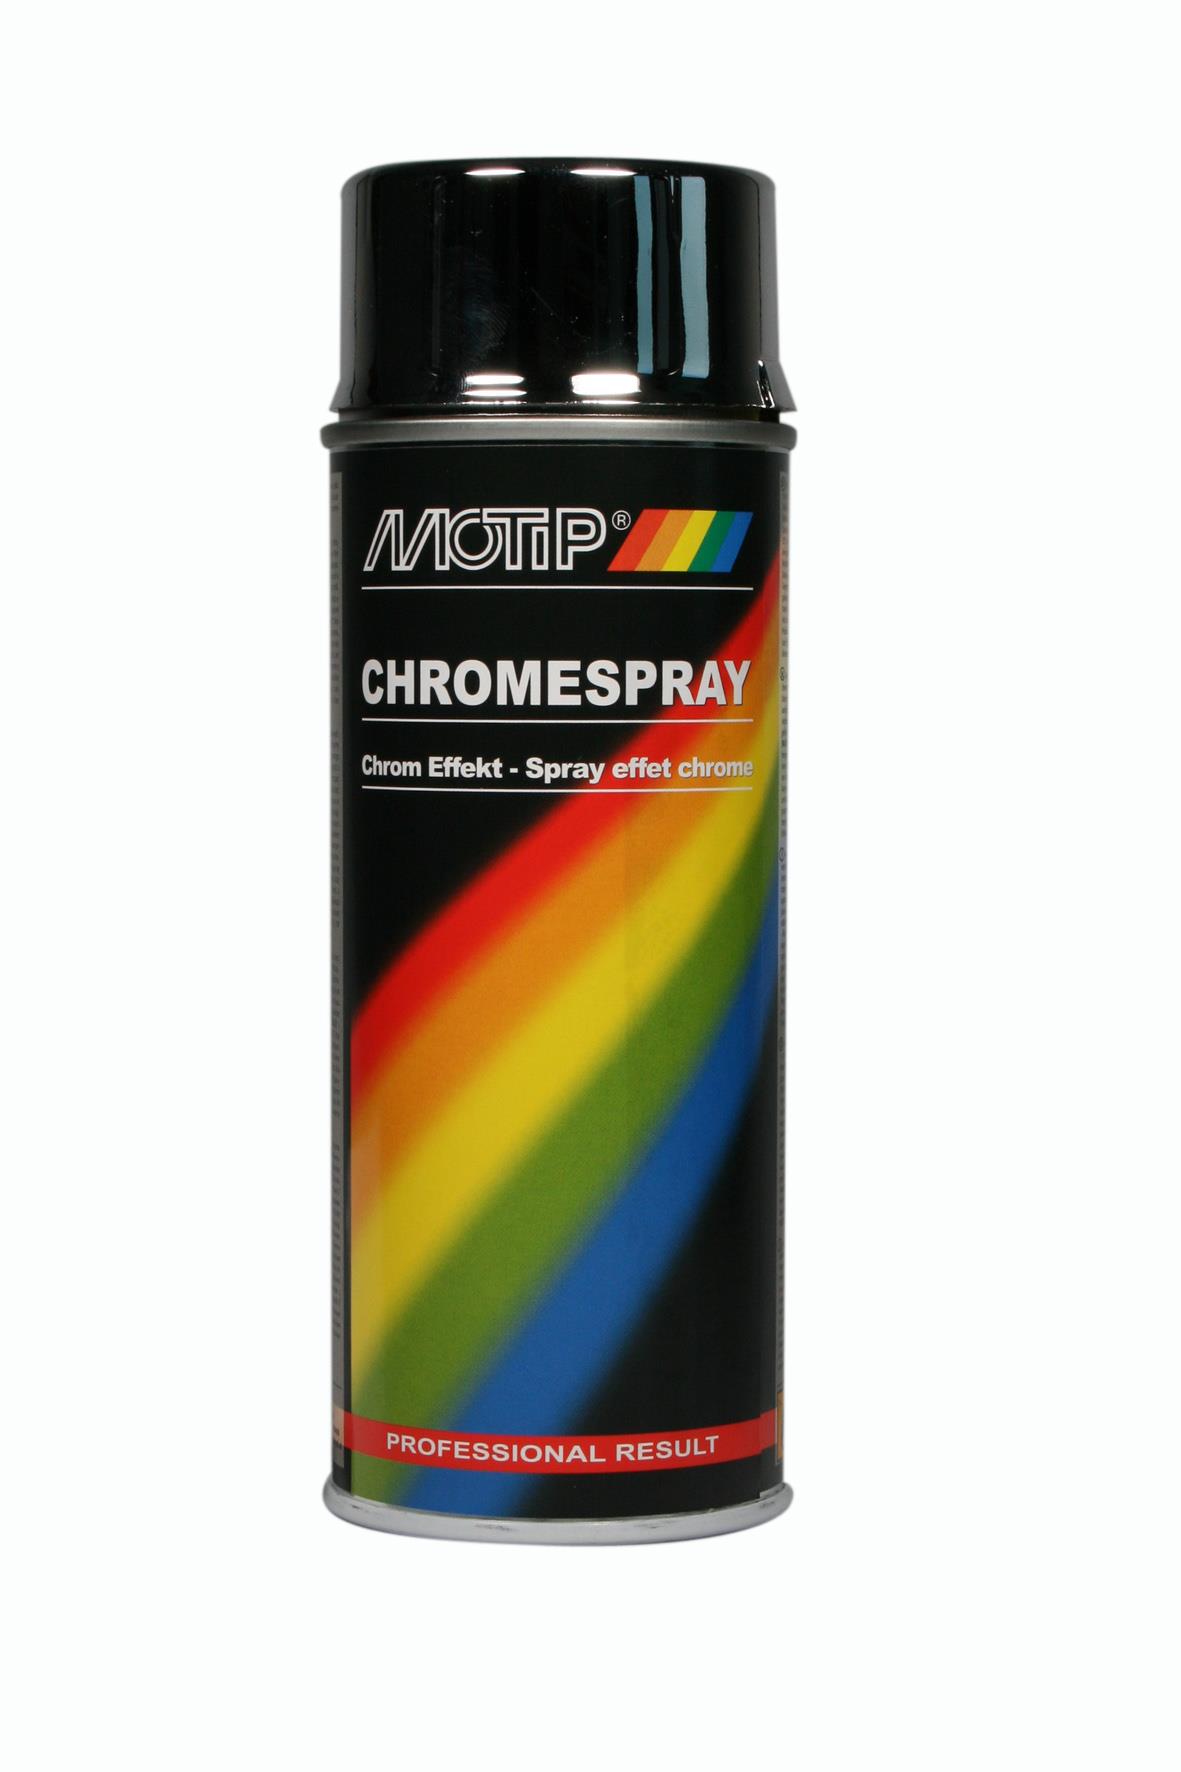 Chrome spray